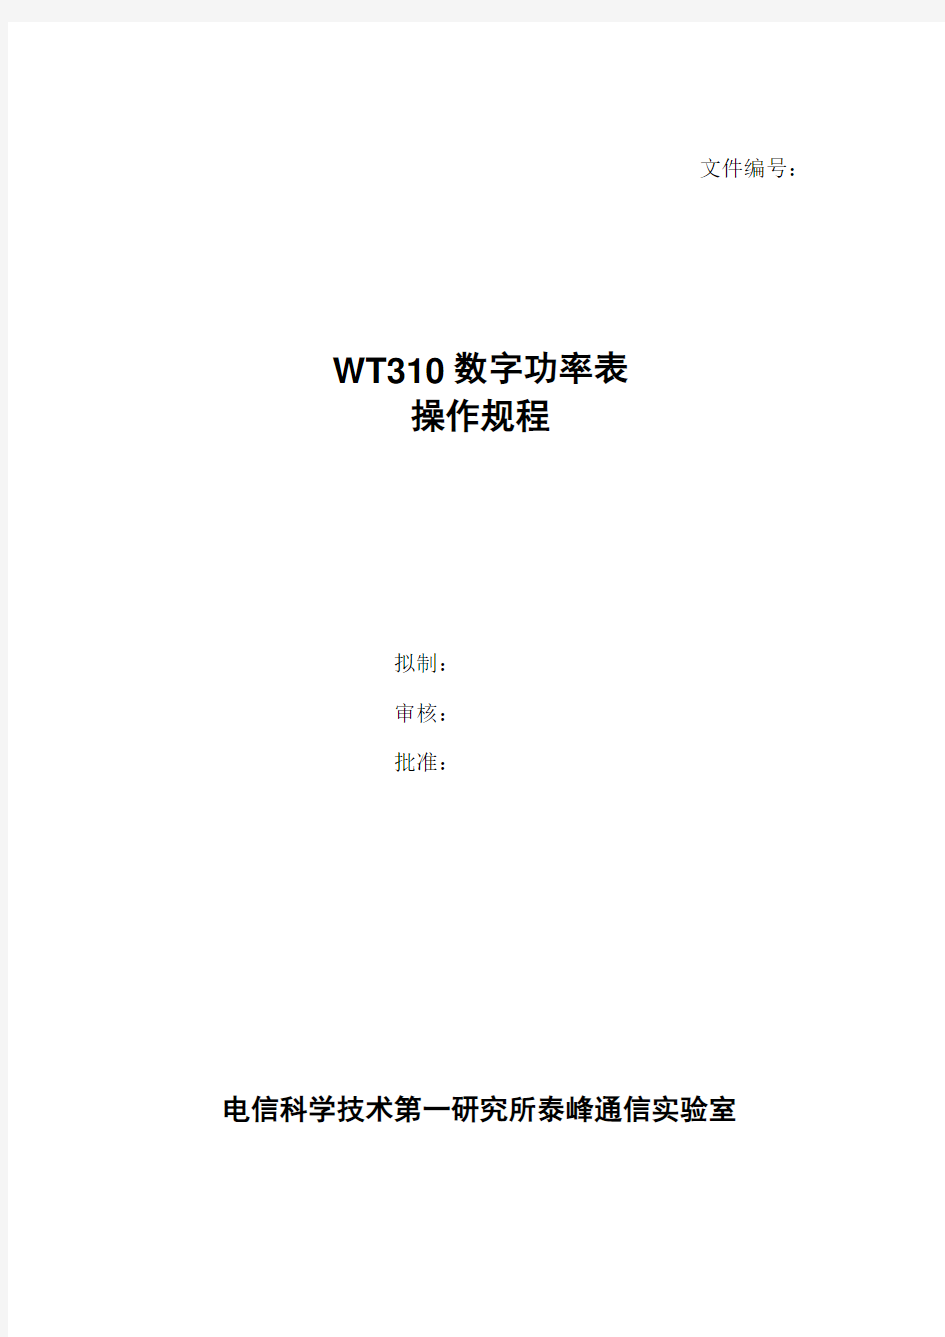 WT310-数字功率表操作规程